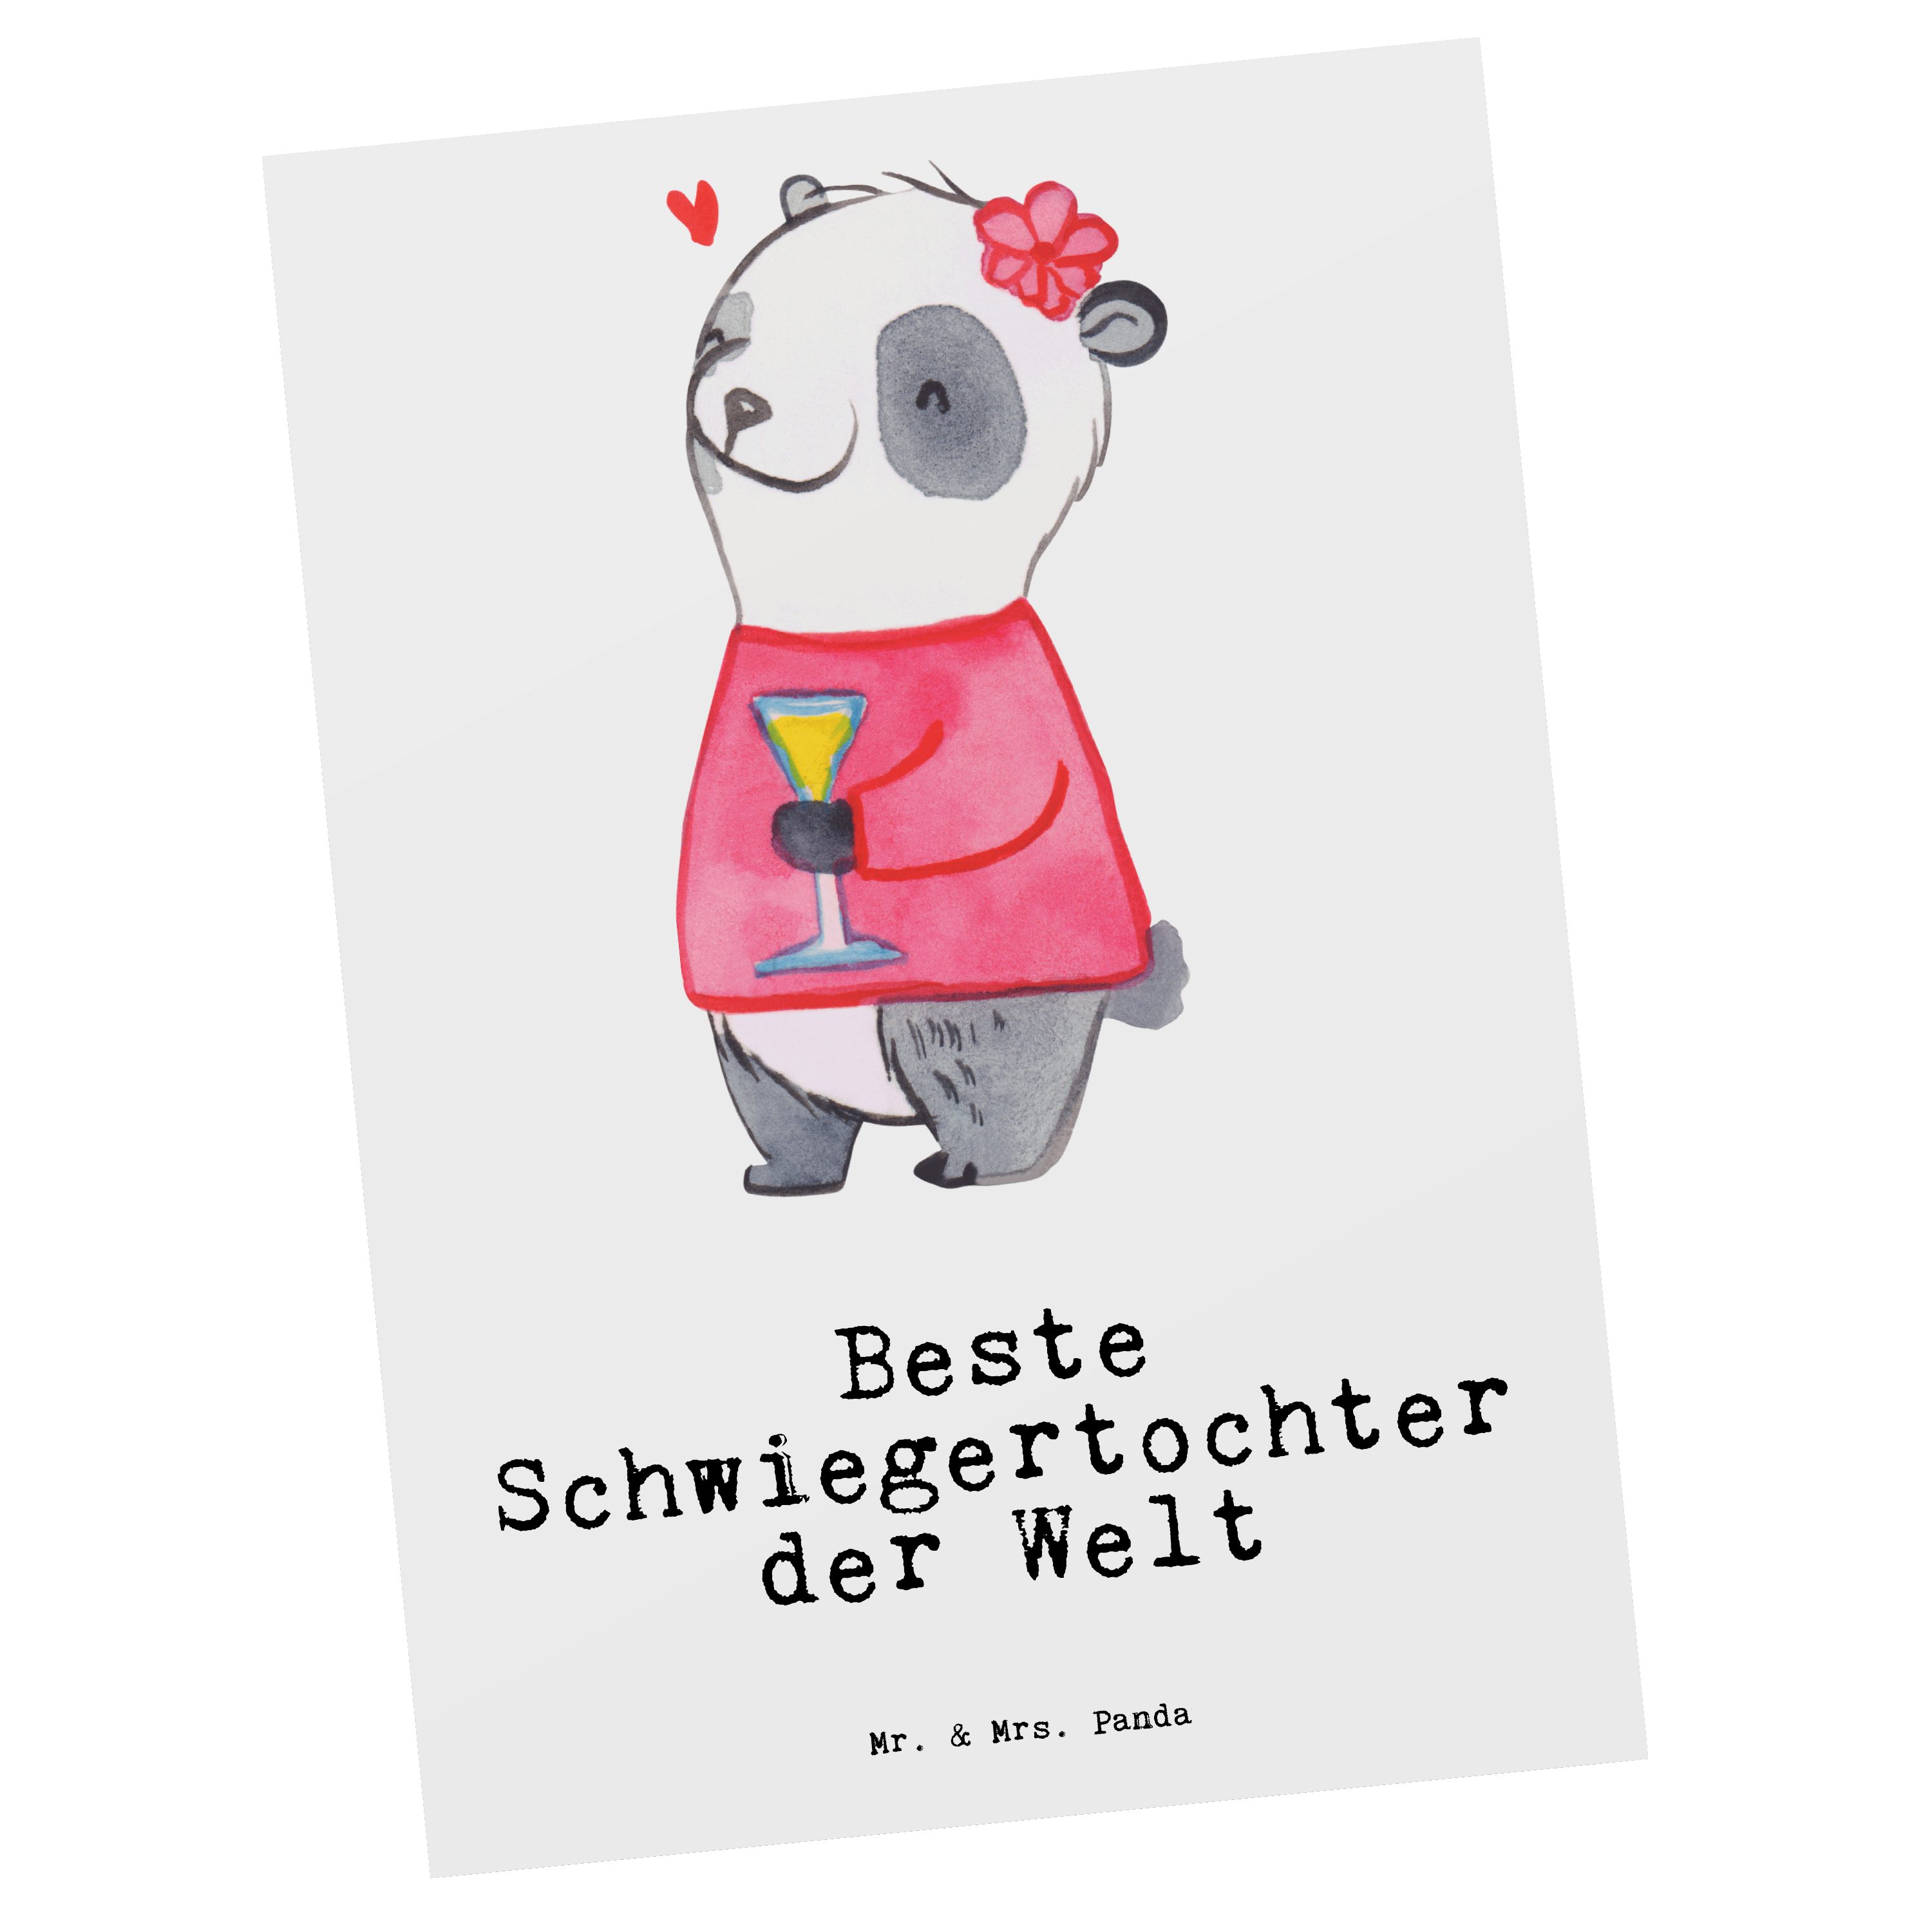 Mr. & Mrs. Beste Weiß Panda Karte, Schen - Panda der Geschenk, Welt Schwiegertochter Postkarte 